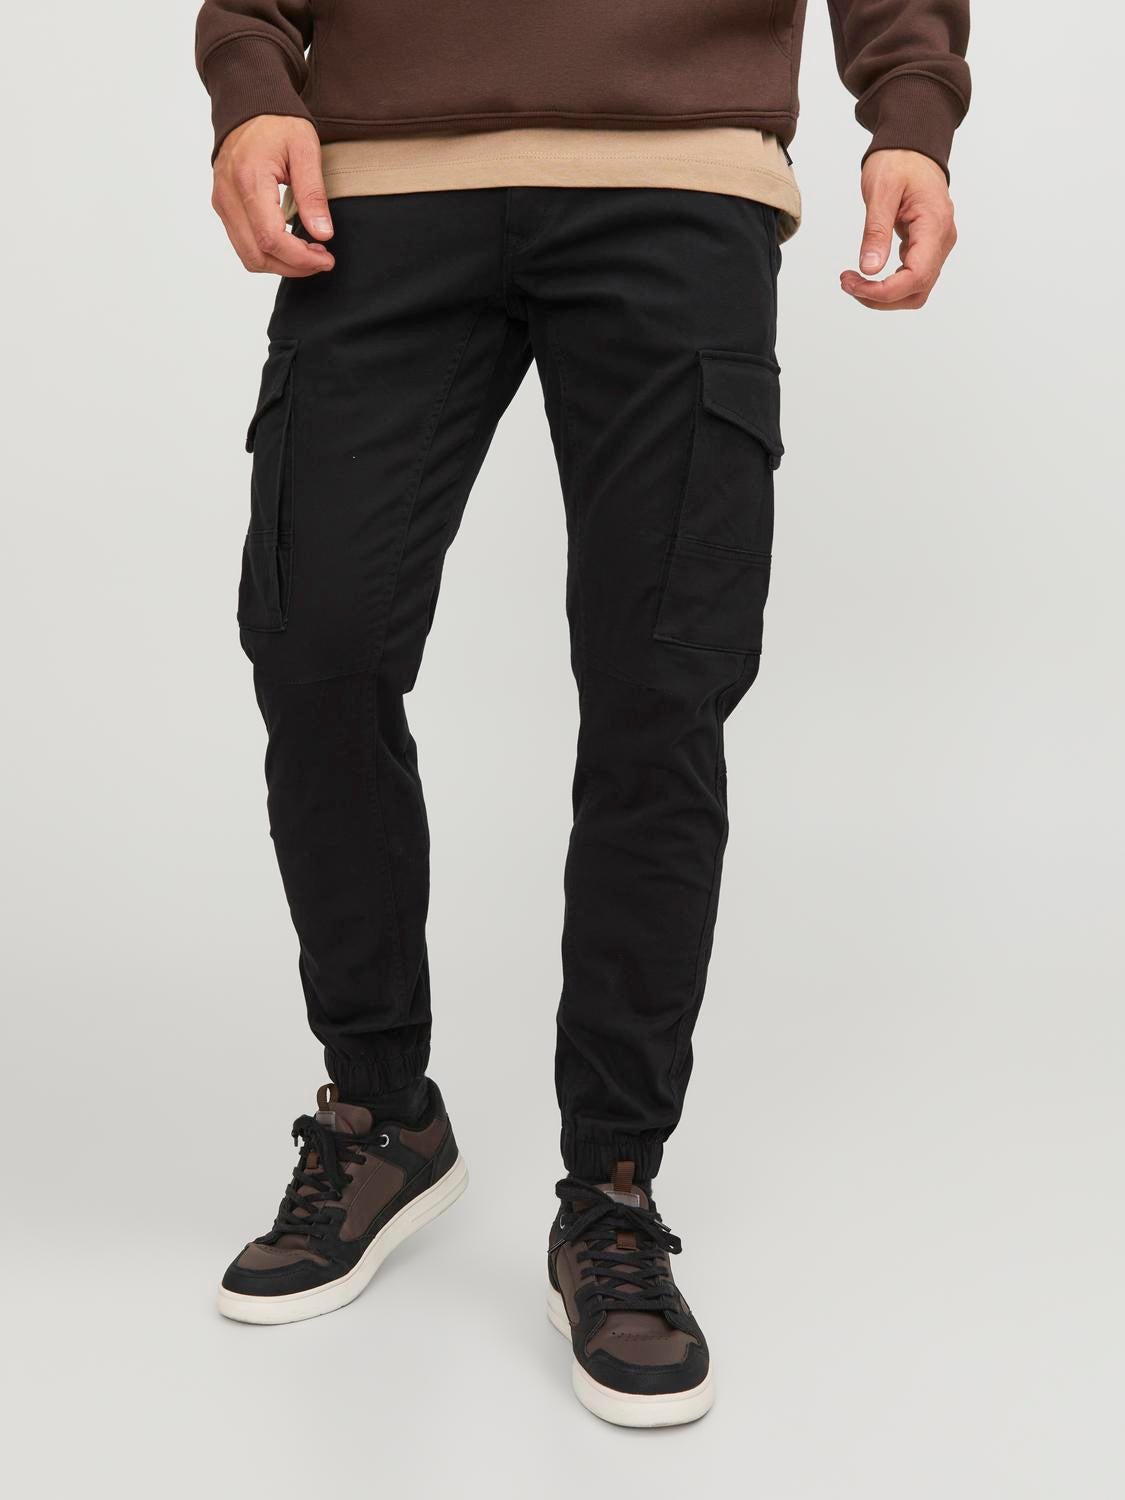 discount 57% Black L Jack & Jones slacks MEN FASHION Trousers Basic 